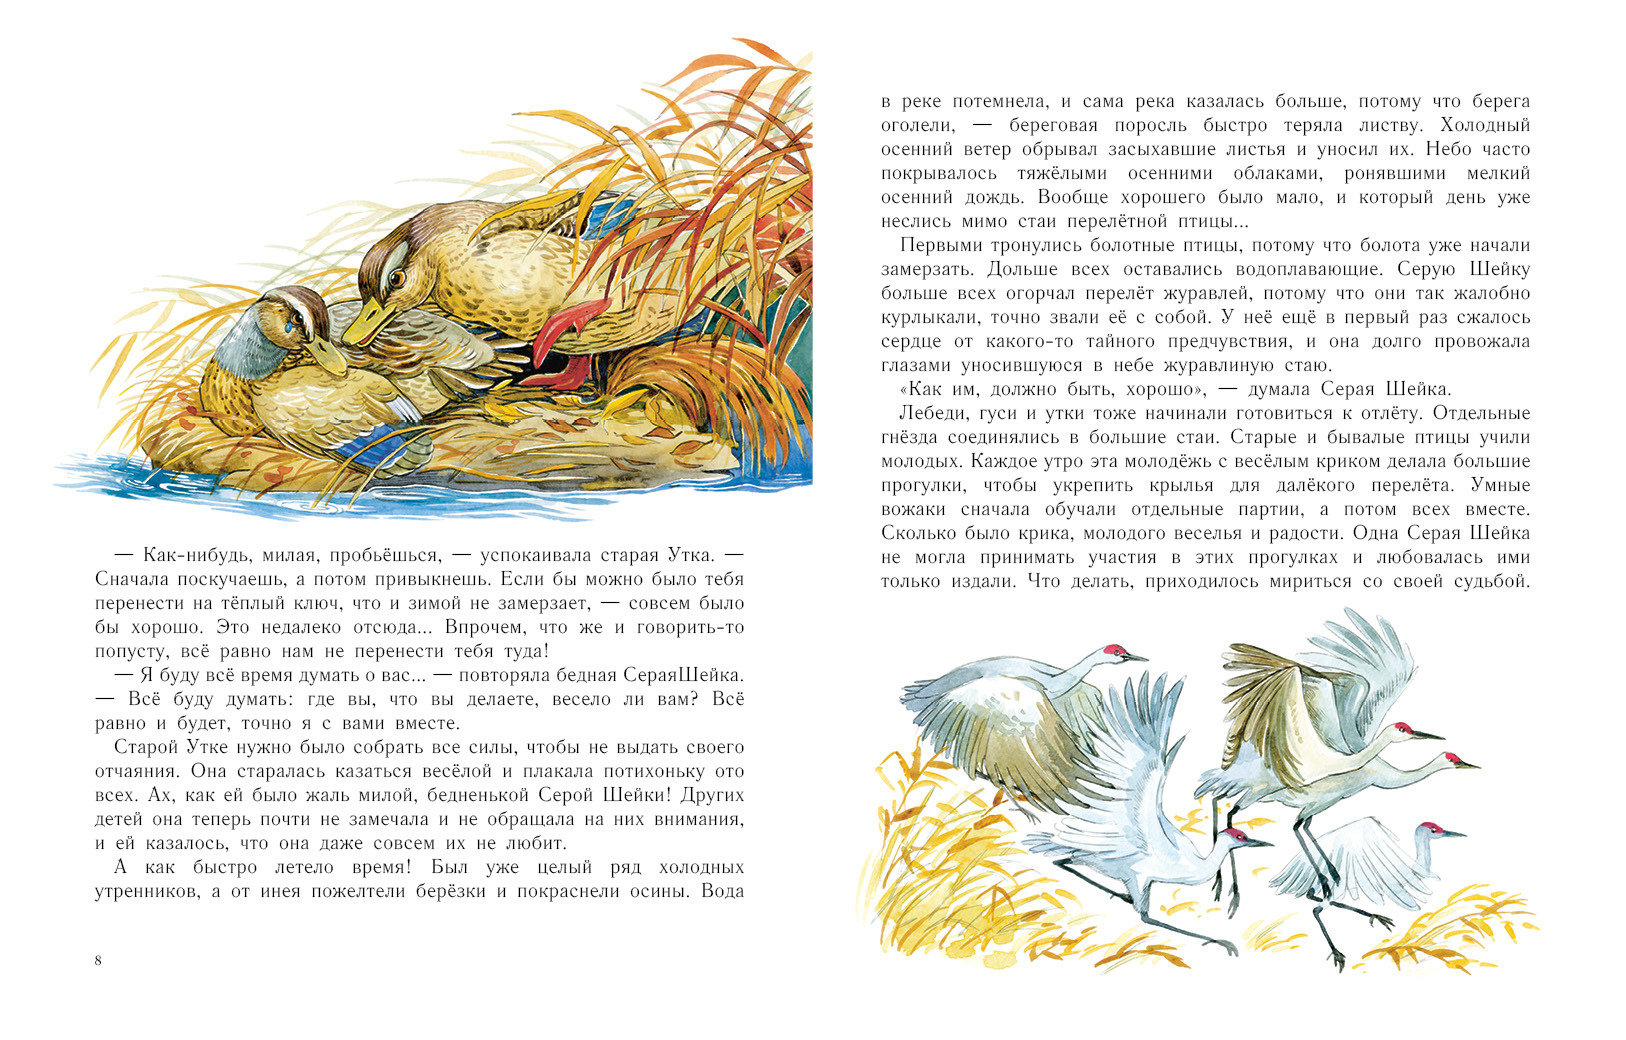 Читать сказку серая шейка - дмитрий мамин-сибиряк, онлайн бесплатно с иллюстрациями.